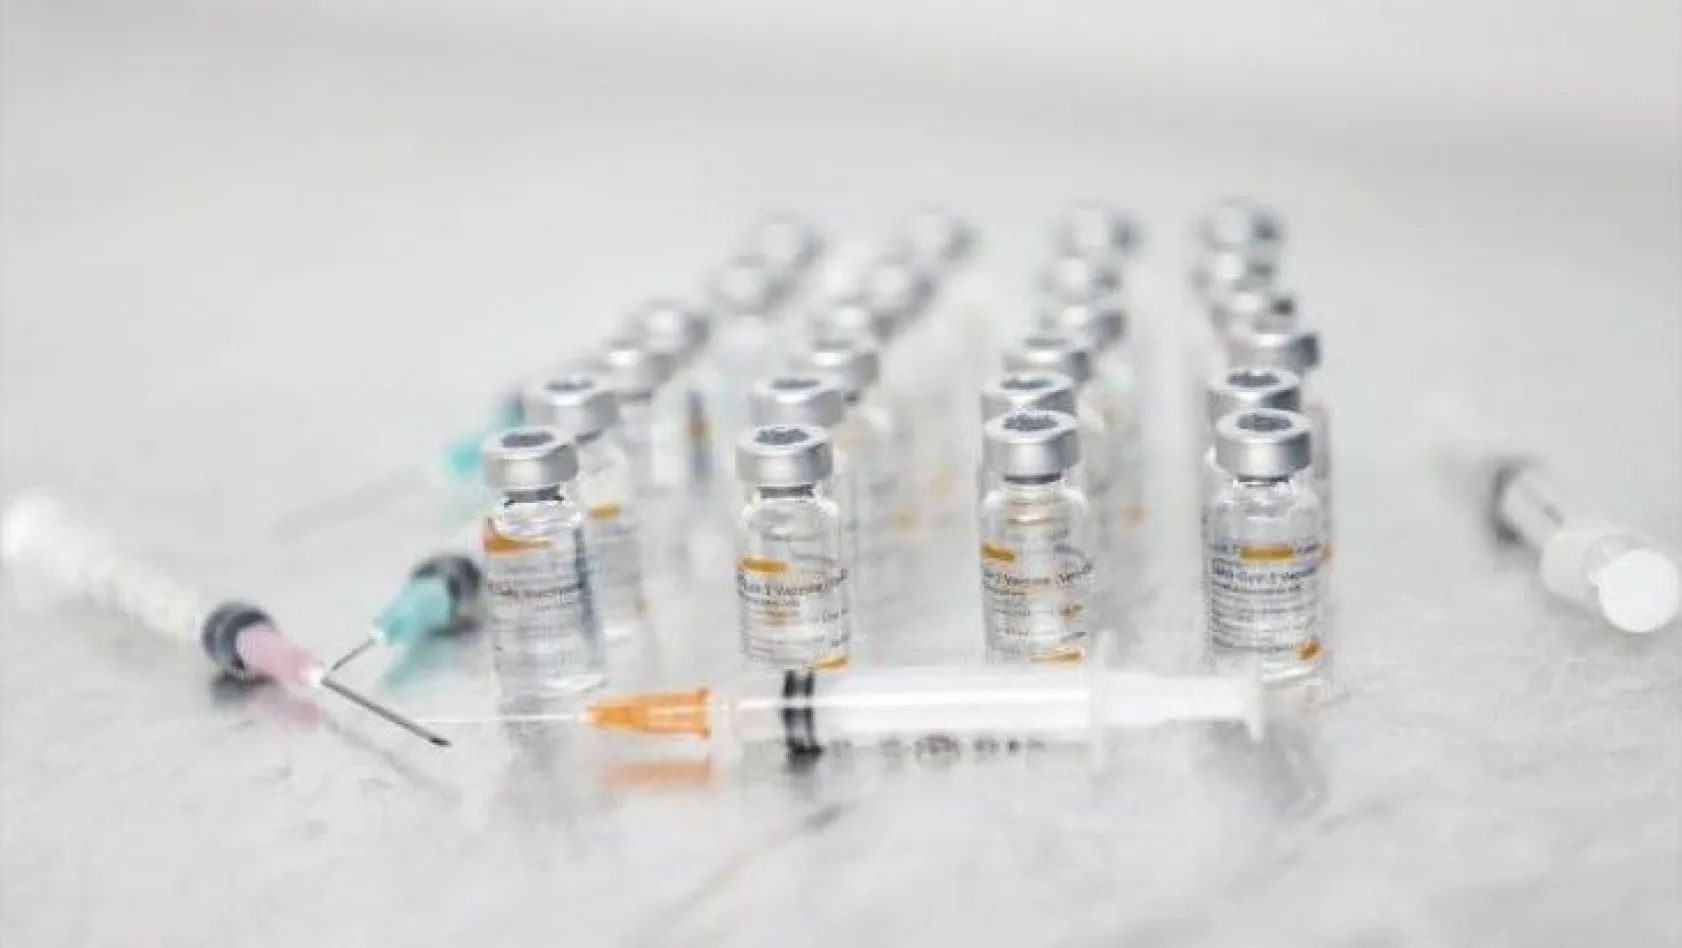 Yeni gelen aşılar 2 haftalık analiz sürecinden geçecek